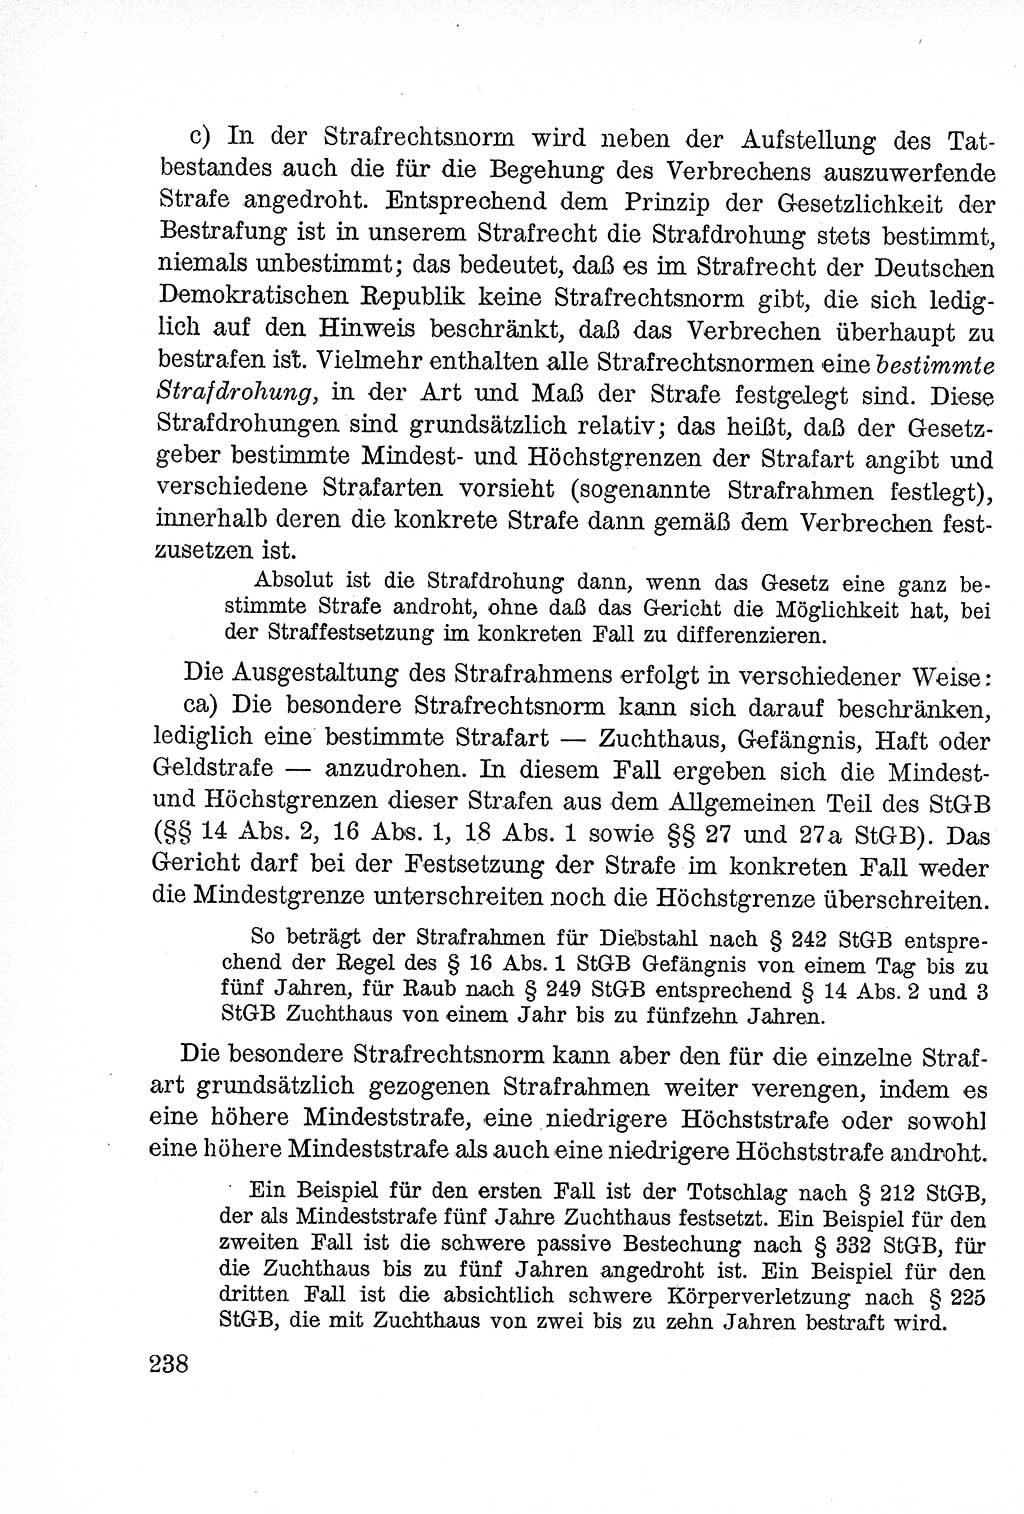 Lehrbuch des Strafrechts der Deutschen Demokratischen Republik (DDR), Allgemeiner Teil 1957, Seite 238 (Lb. Strafr. DDR AT 1957, S. 238)